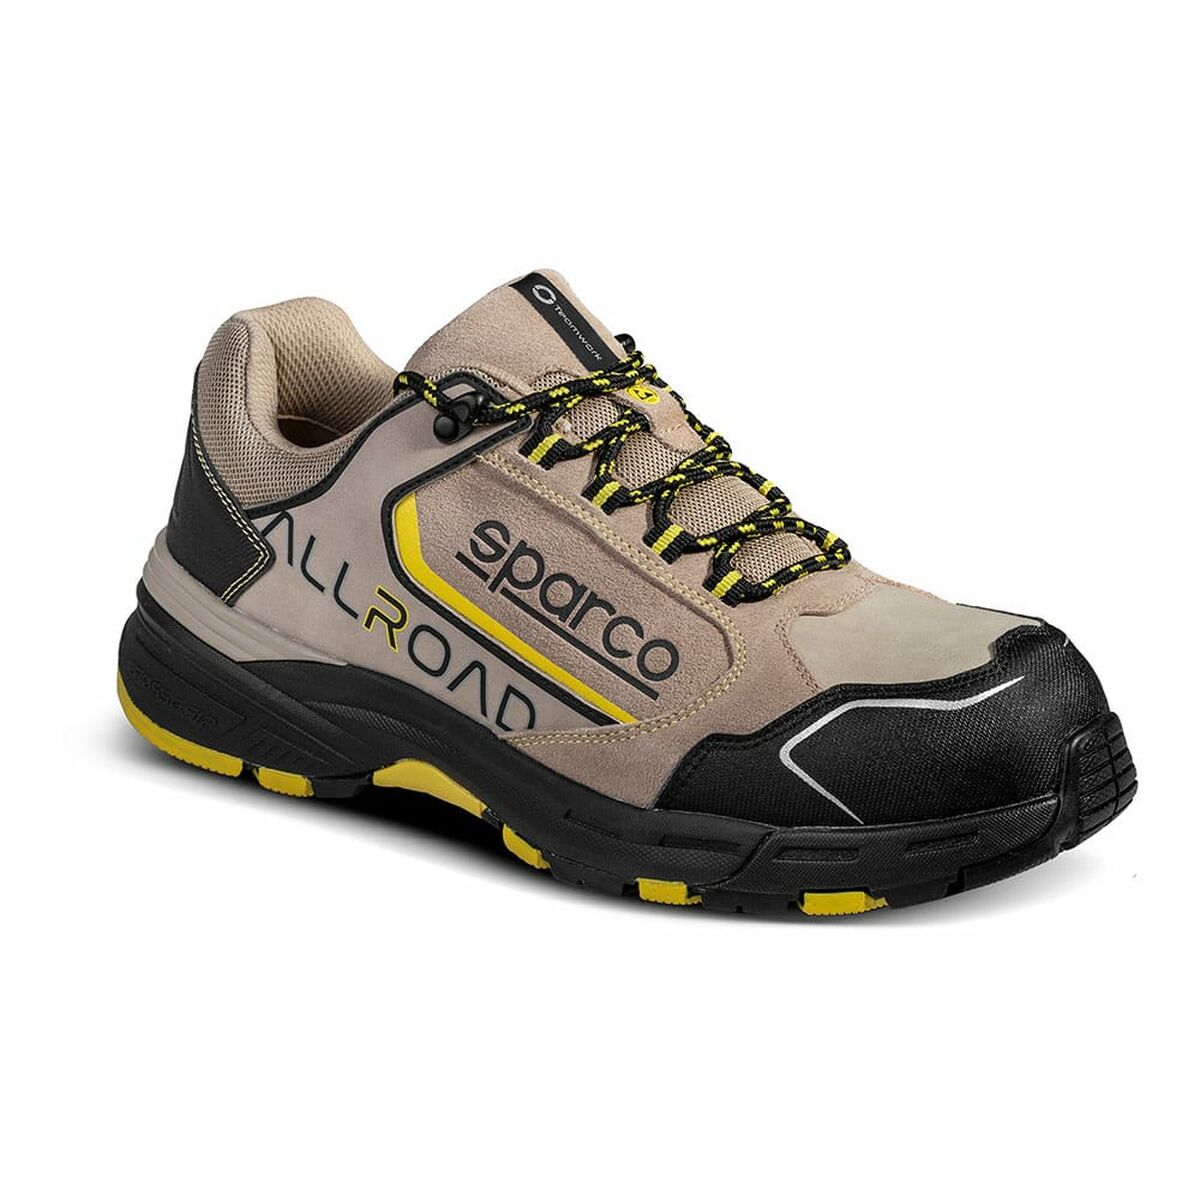 Sicherheits-Schuhe Sparco Allroad S3 ESD - AWK Flagship